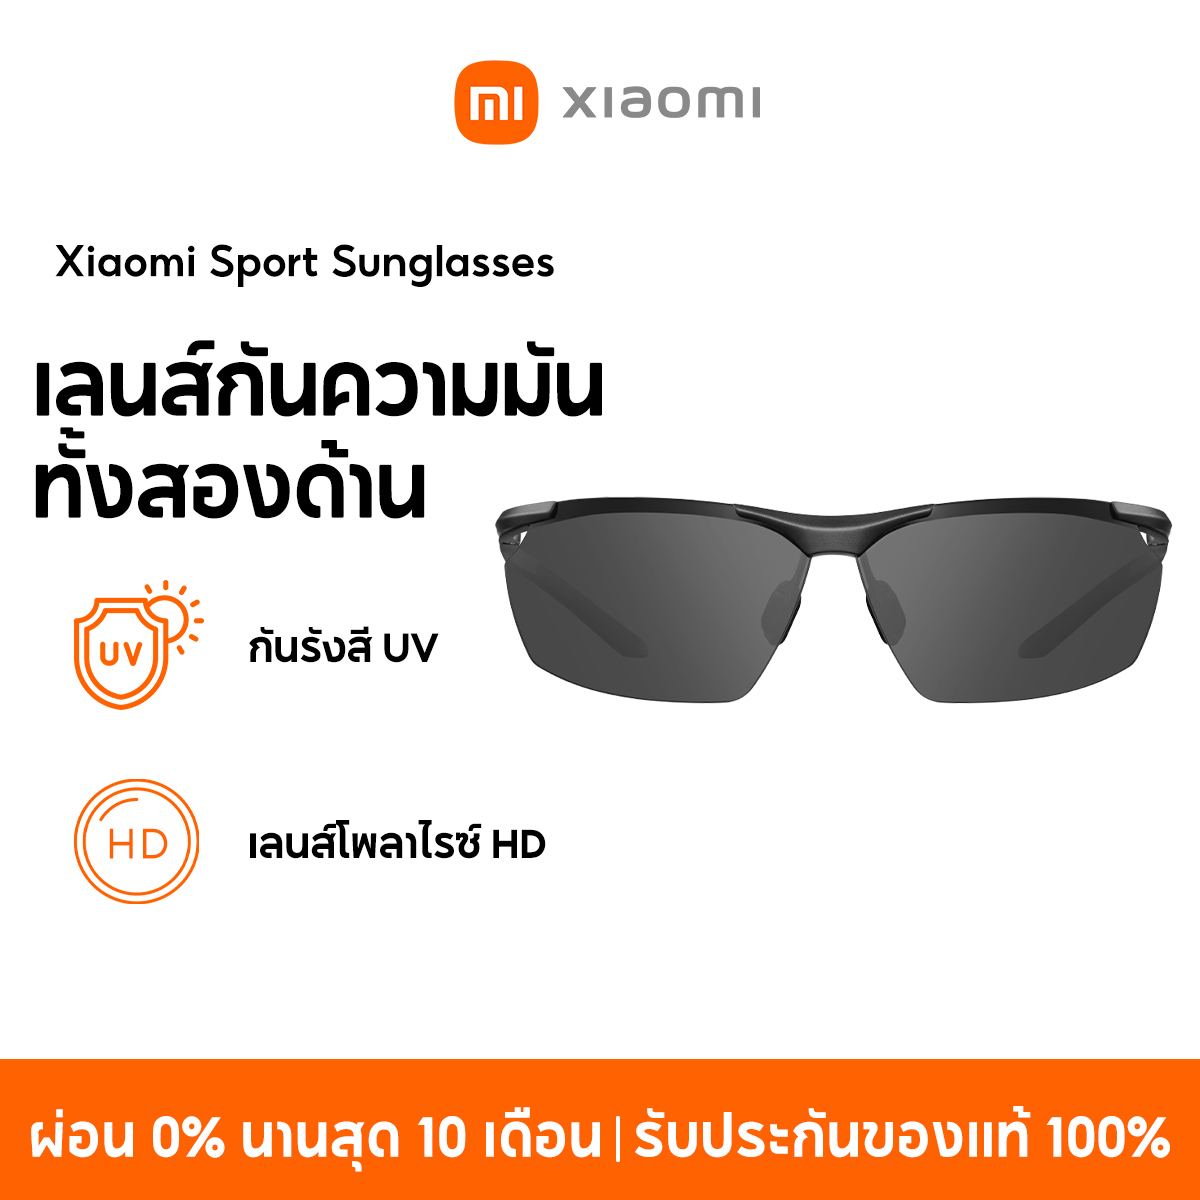 NEW] Xiaomi Sunglasses Series แว่นกันแดด กันรังสี แสงสีม่วง เลนส์โพลาไรซ์  HD เลนส์กันความมันทั้งสองด้าน